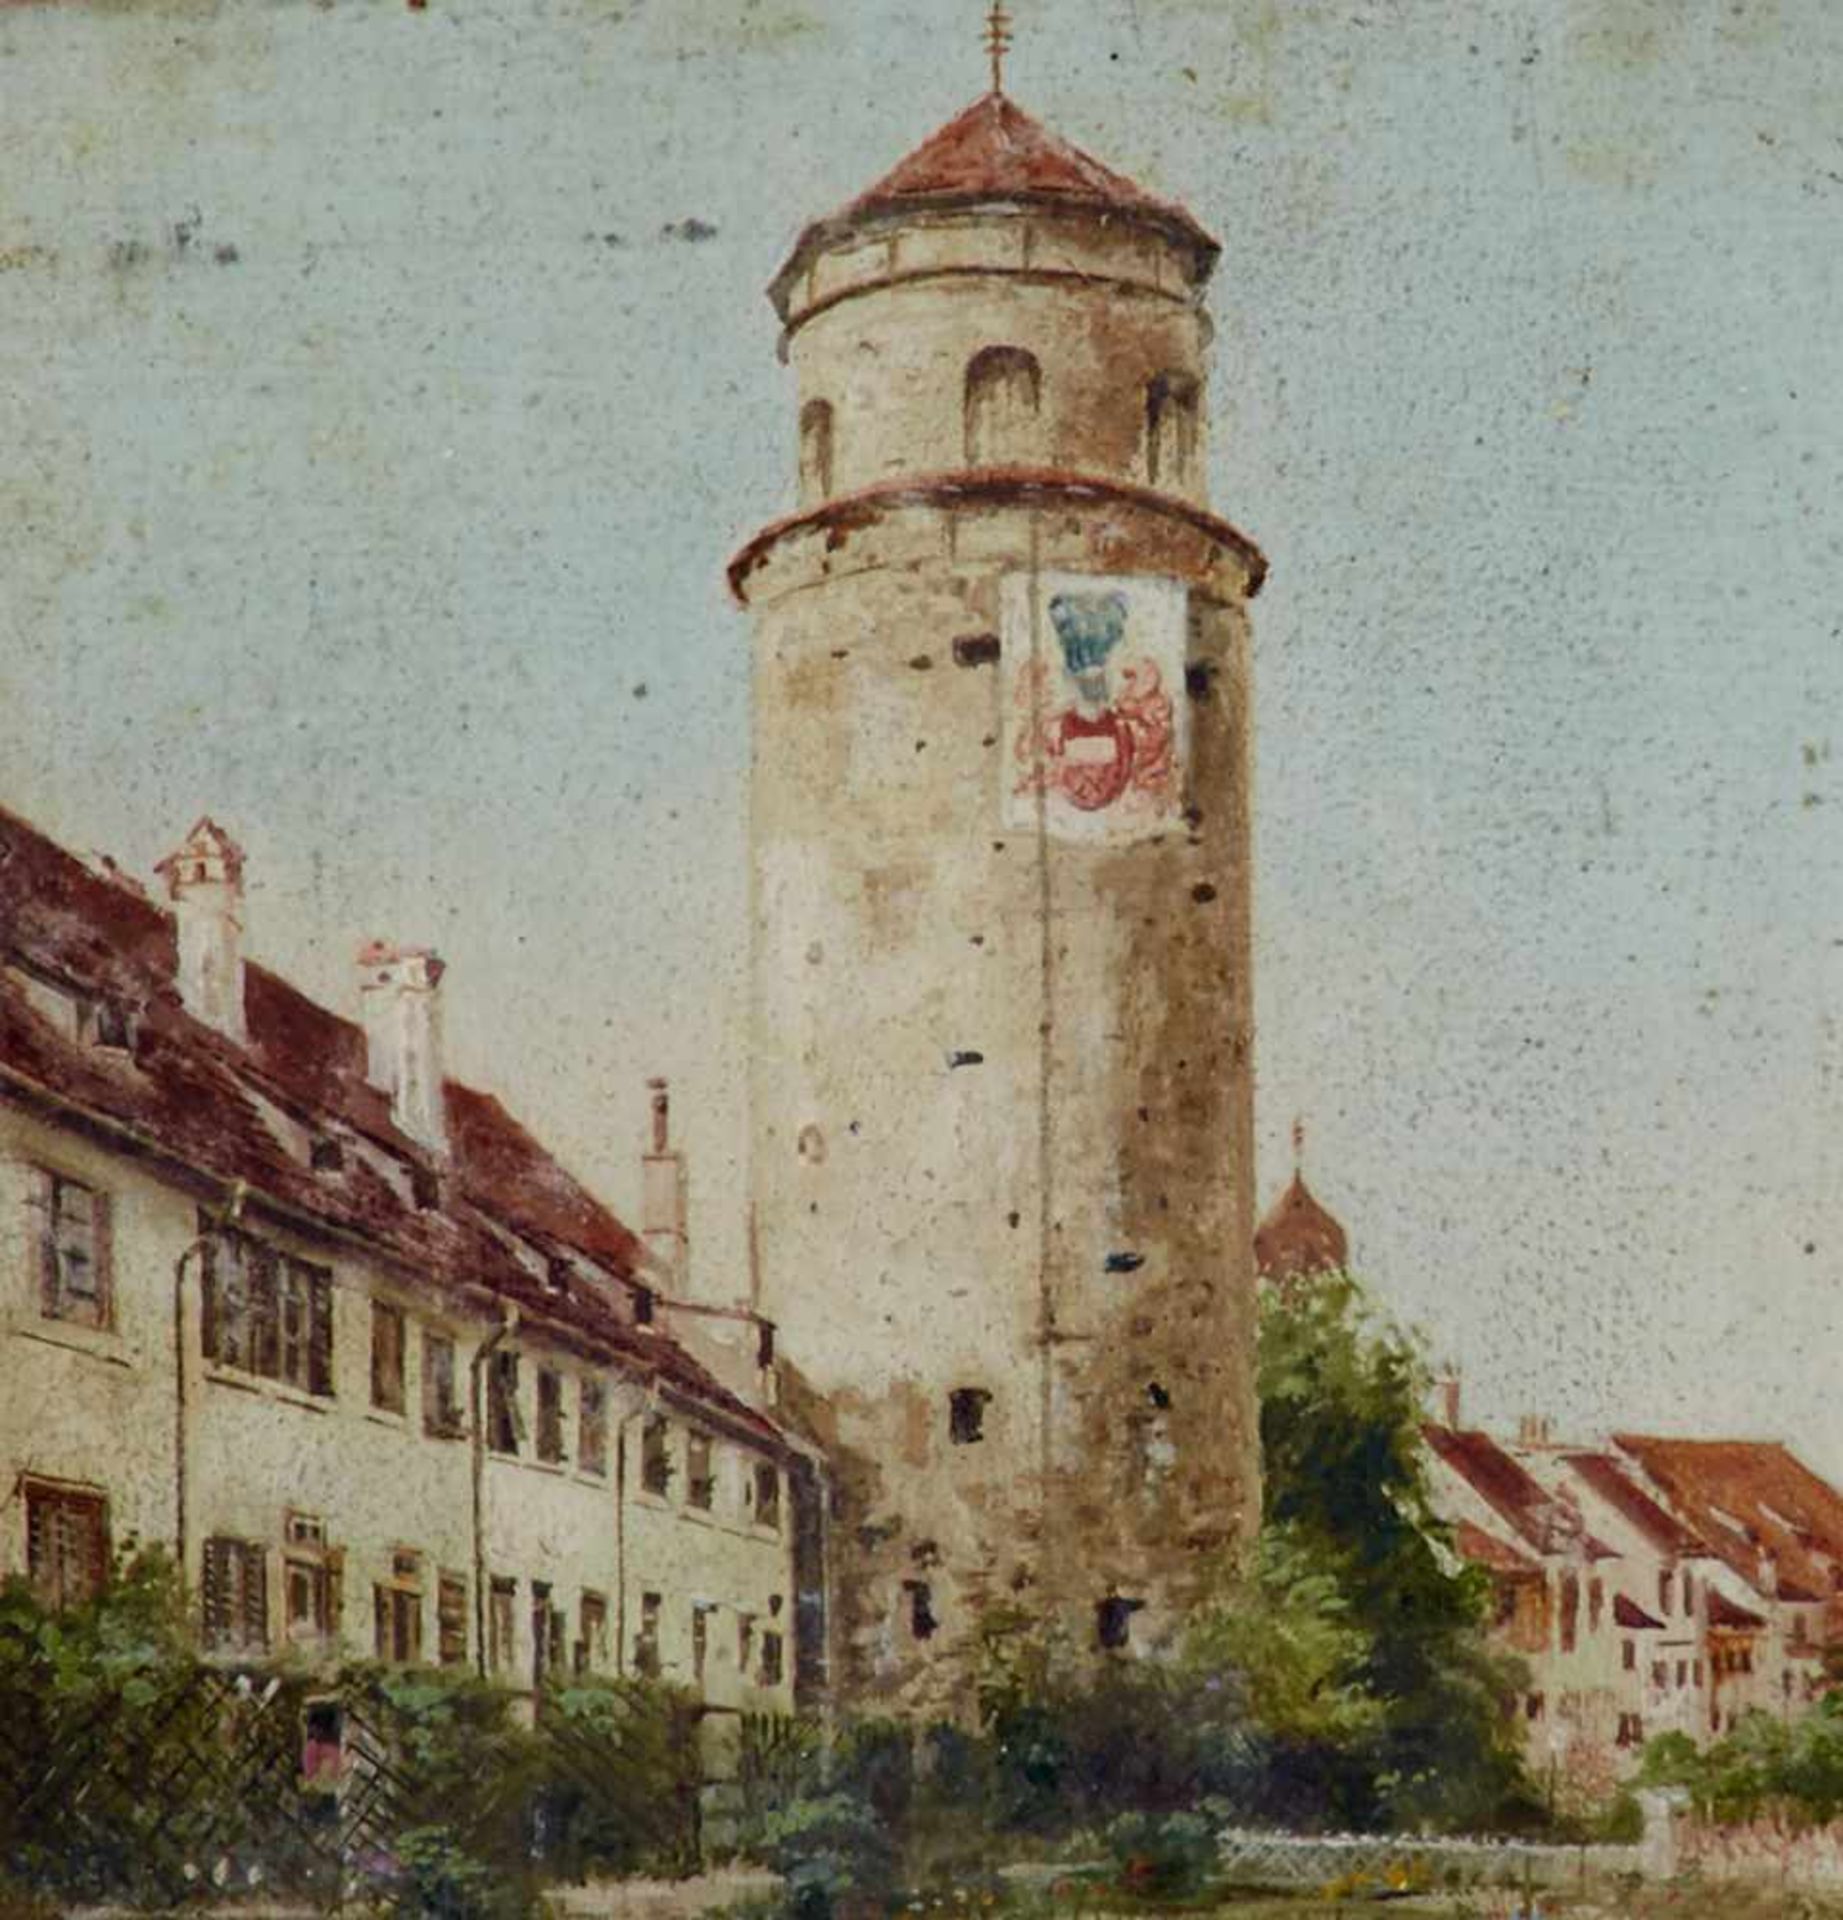 Österreich - Feldkirch -Katzenturm. Öl auf Karton, von J. Frenes, um 1900. 9,8 x 9 cm. - Auf